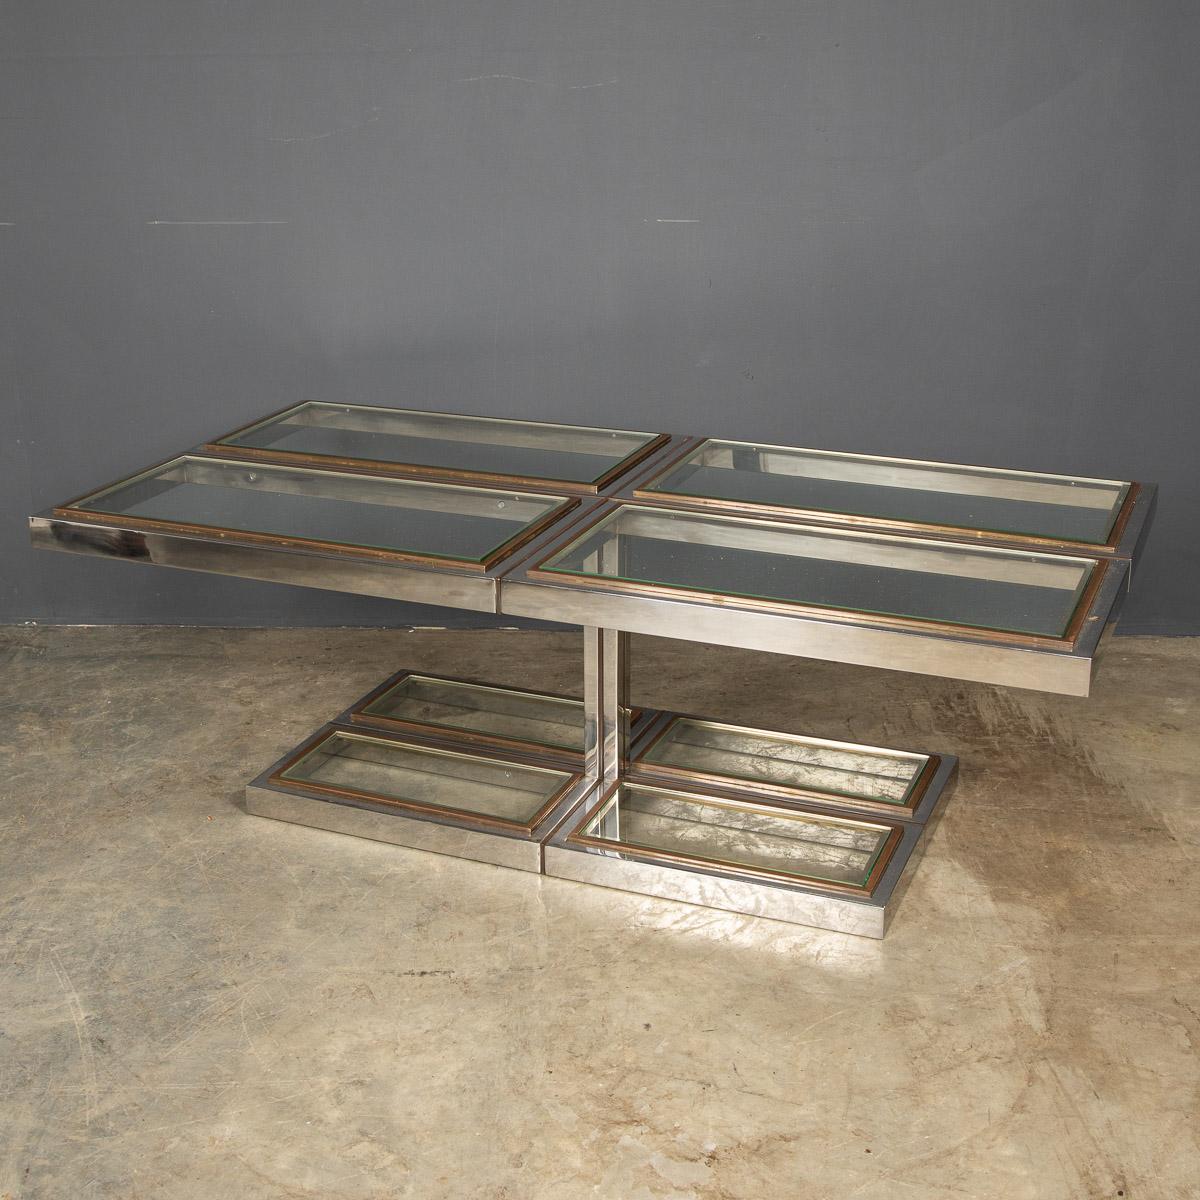 Remarquable table basse italienne du 20e siècle en métal chromé, laiton et verre, avec quatre panneaux de verre au pied et quatre panneaux de verre sur le dessus, fabriquée dans les années 1970.

Condition
En excellent état - usure conforme à